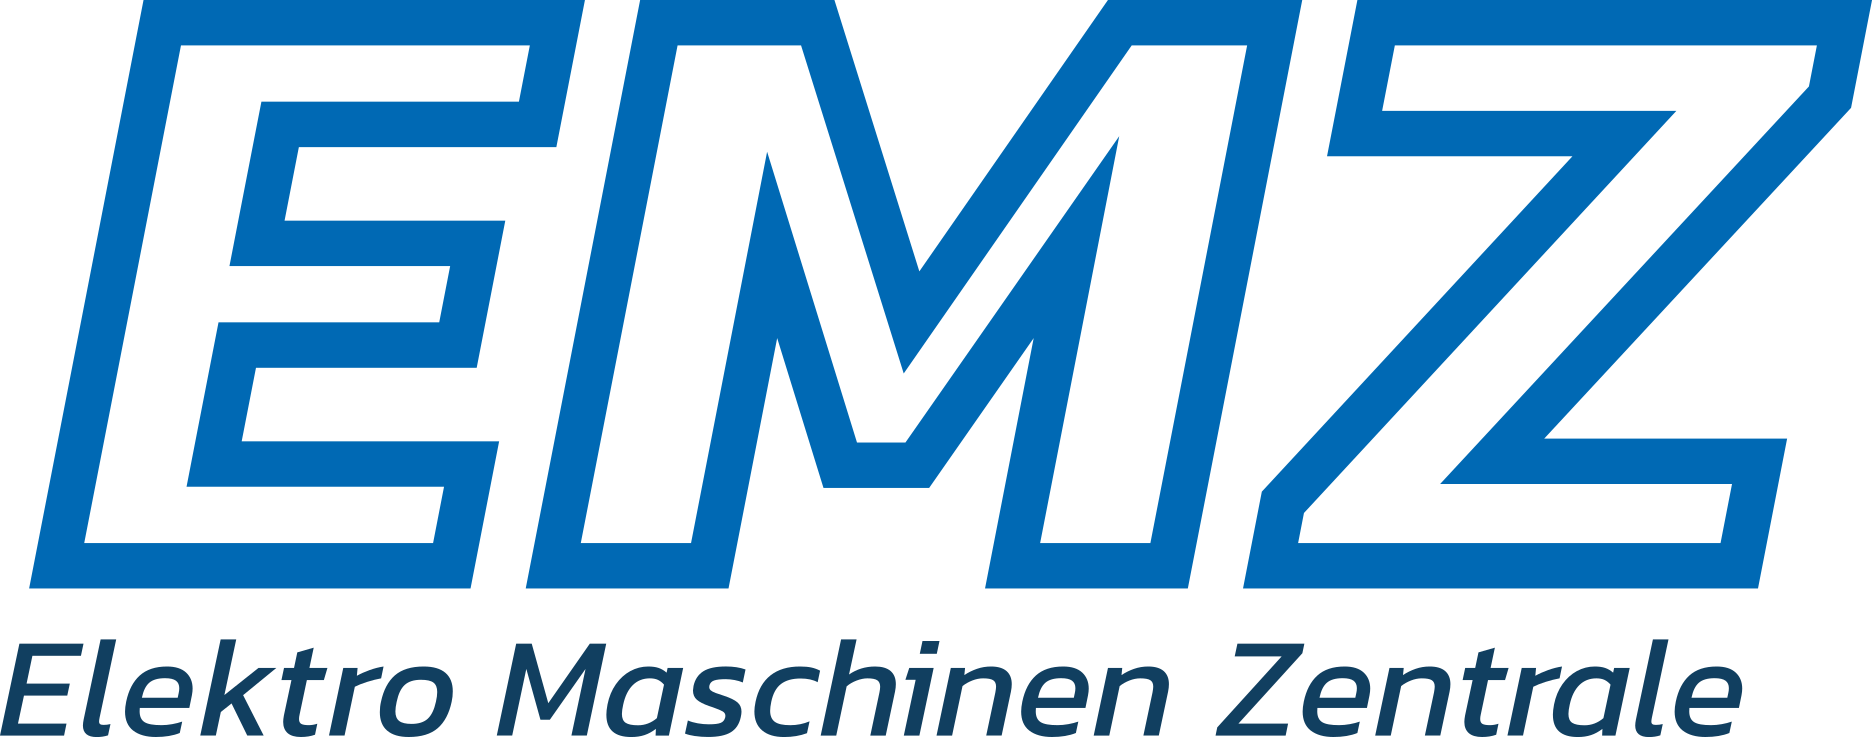 Logo_EMZ.png